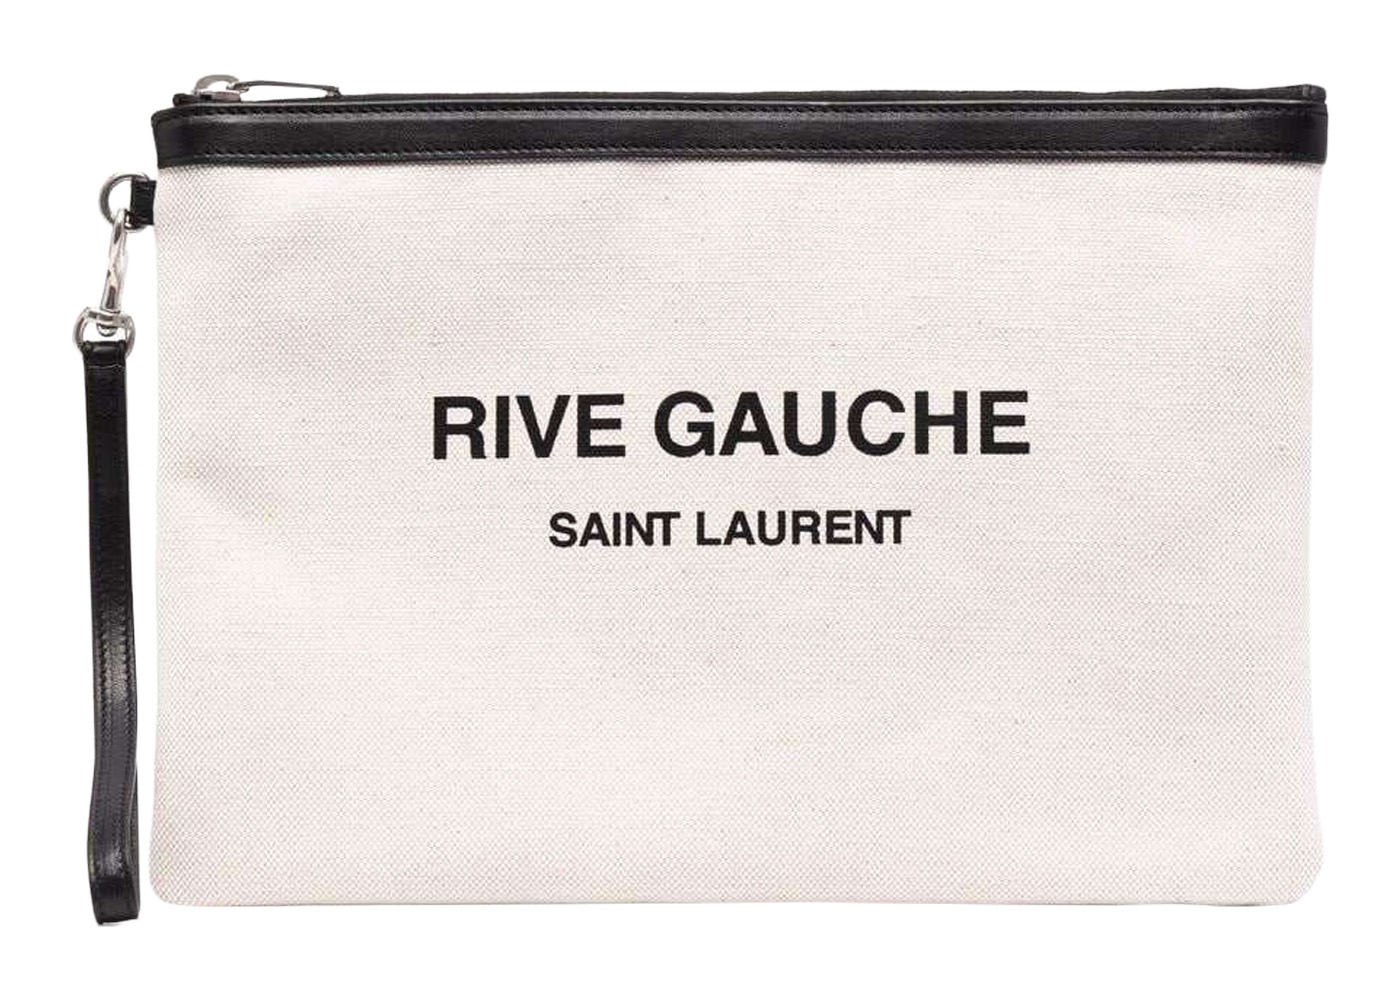 Saint Laurent Rive Gauche Zipped Pouch Off White/Black